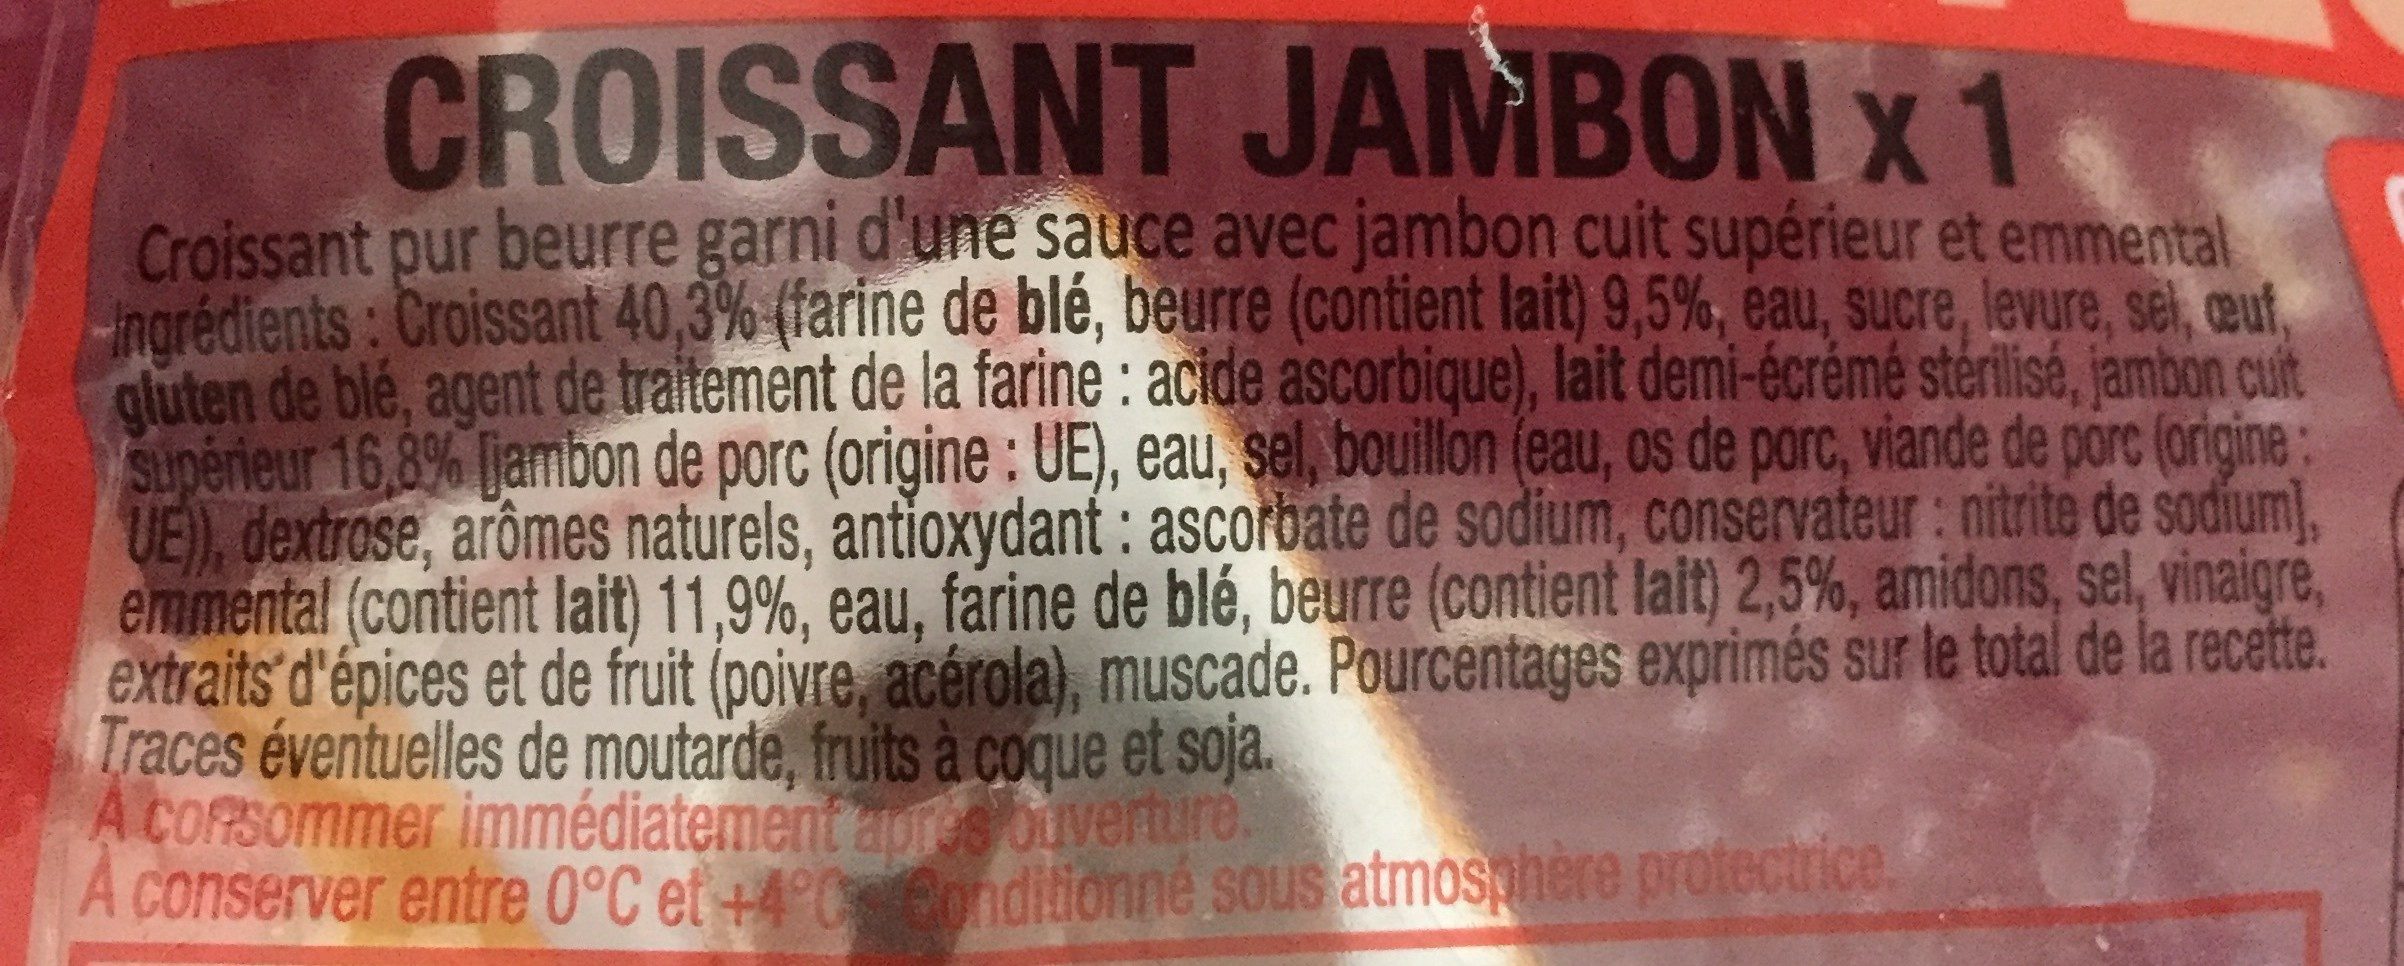 Croissant au jambon - Ingredients - fr